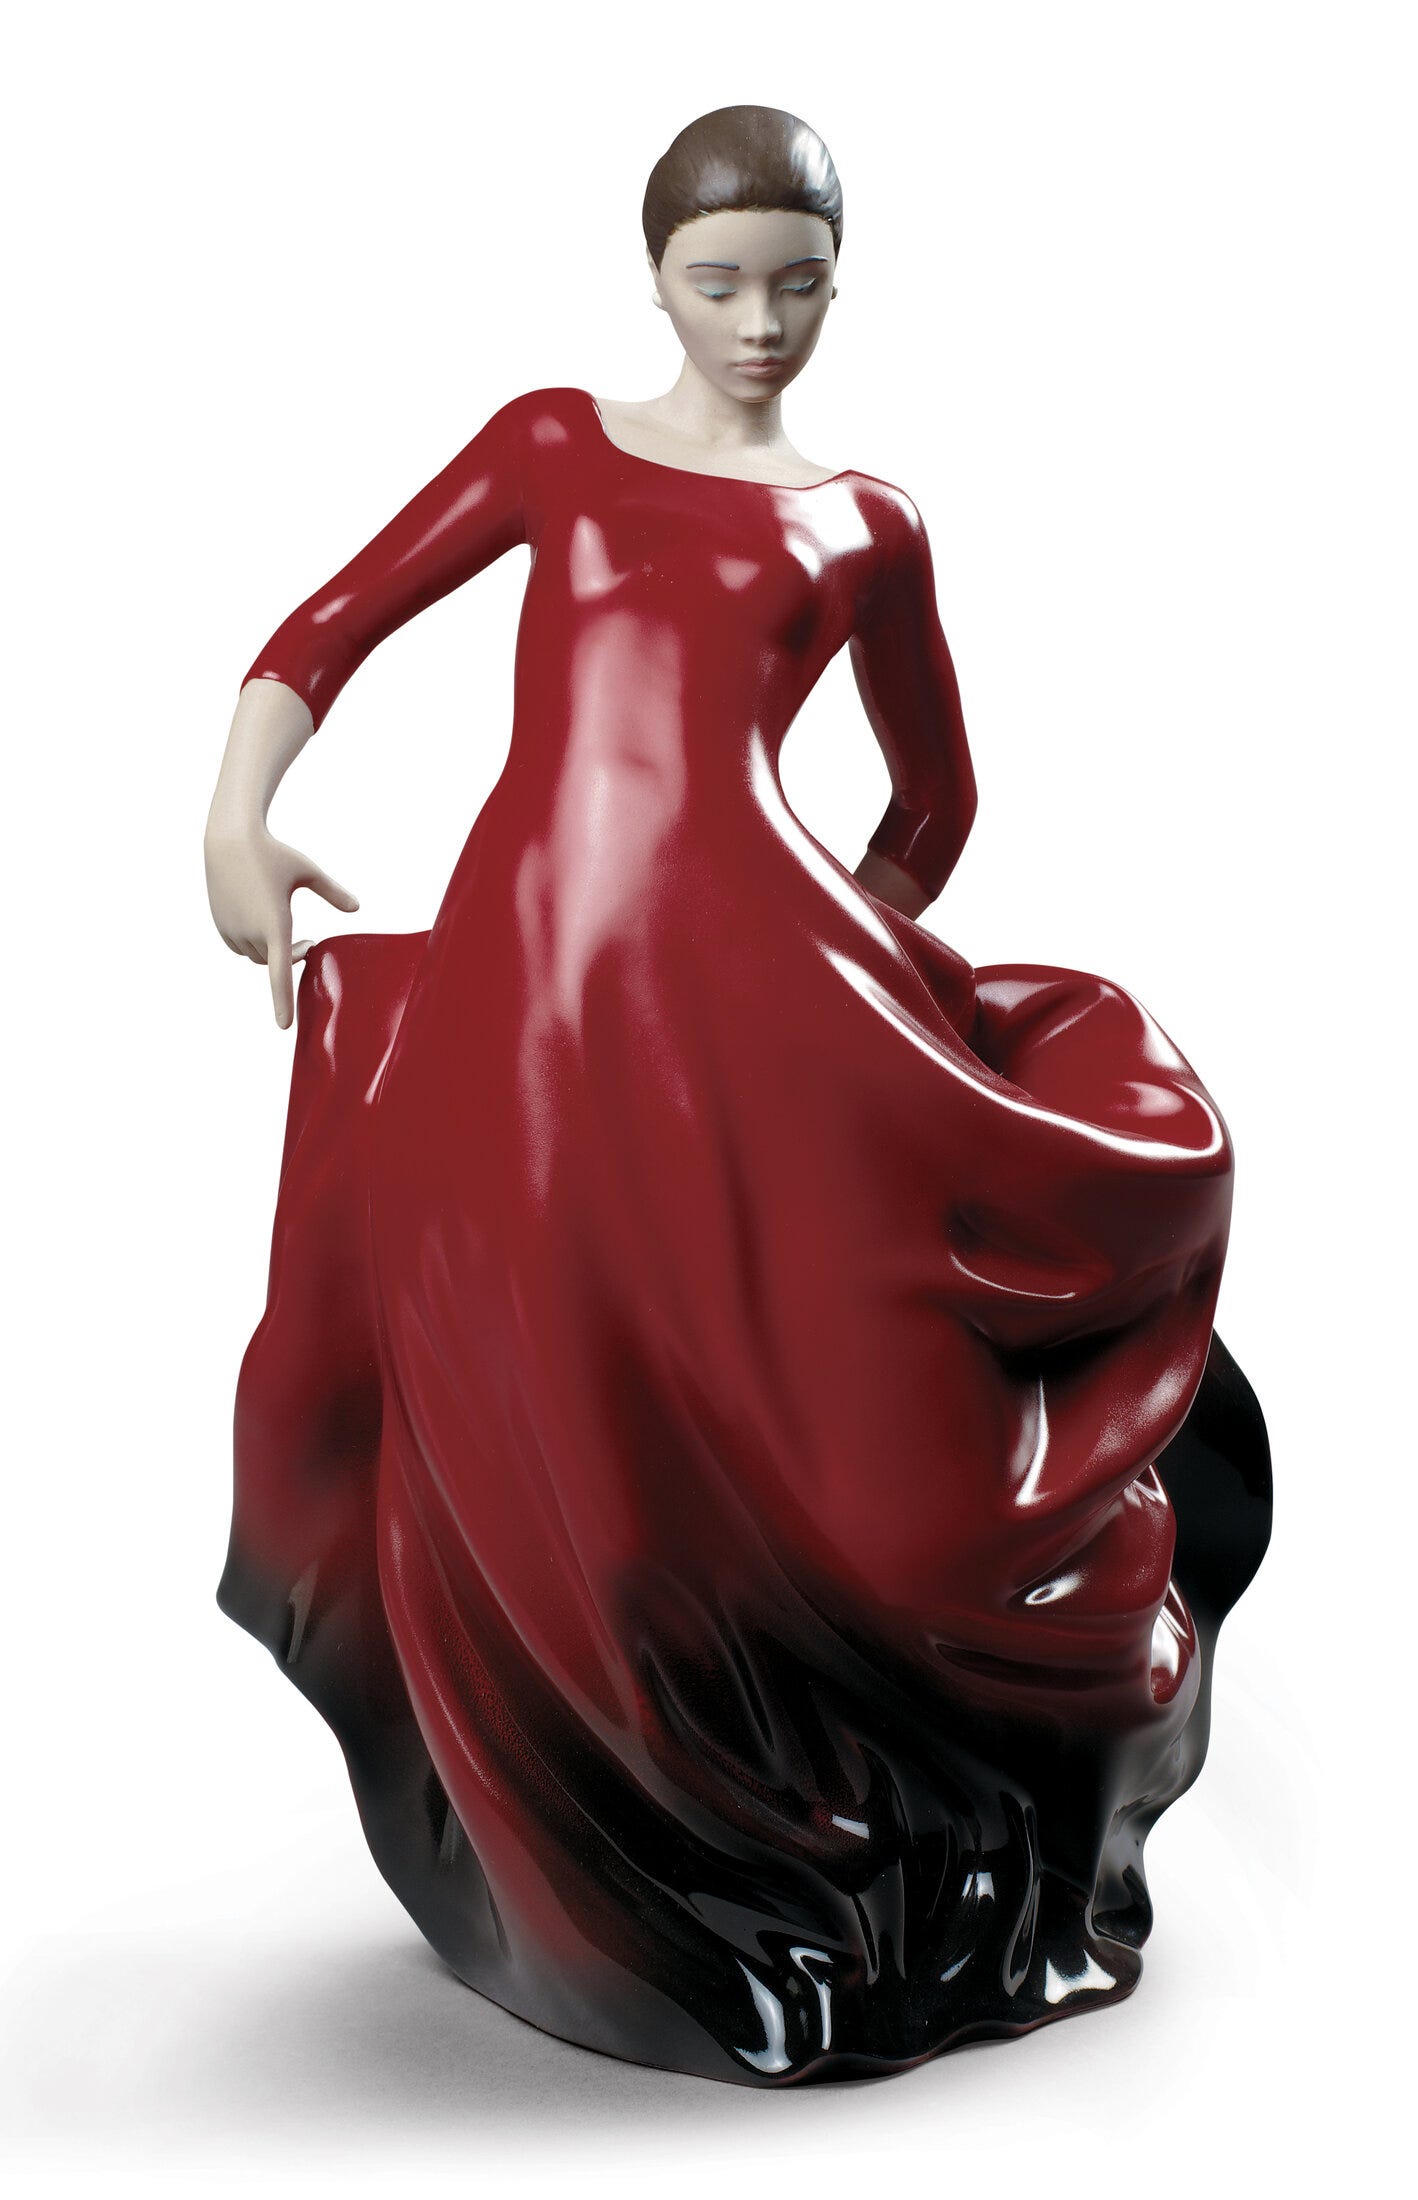 Figurina di donna ballerina di flamenco Buleria. Rosso